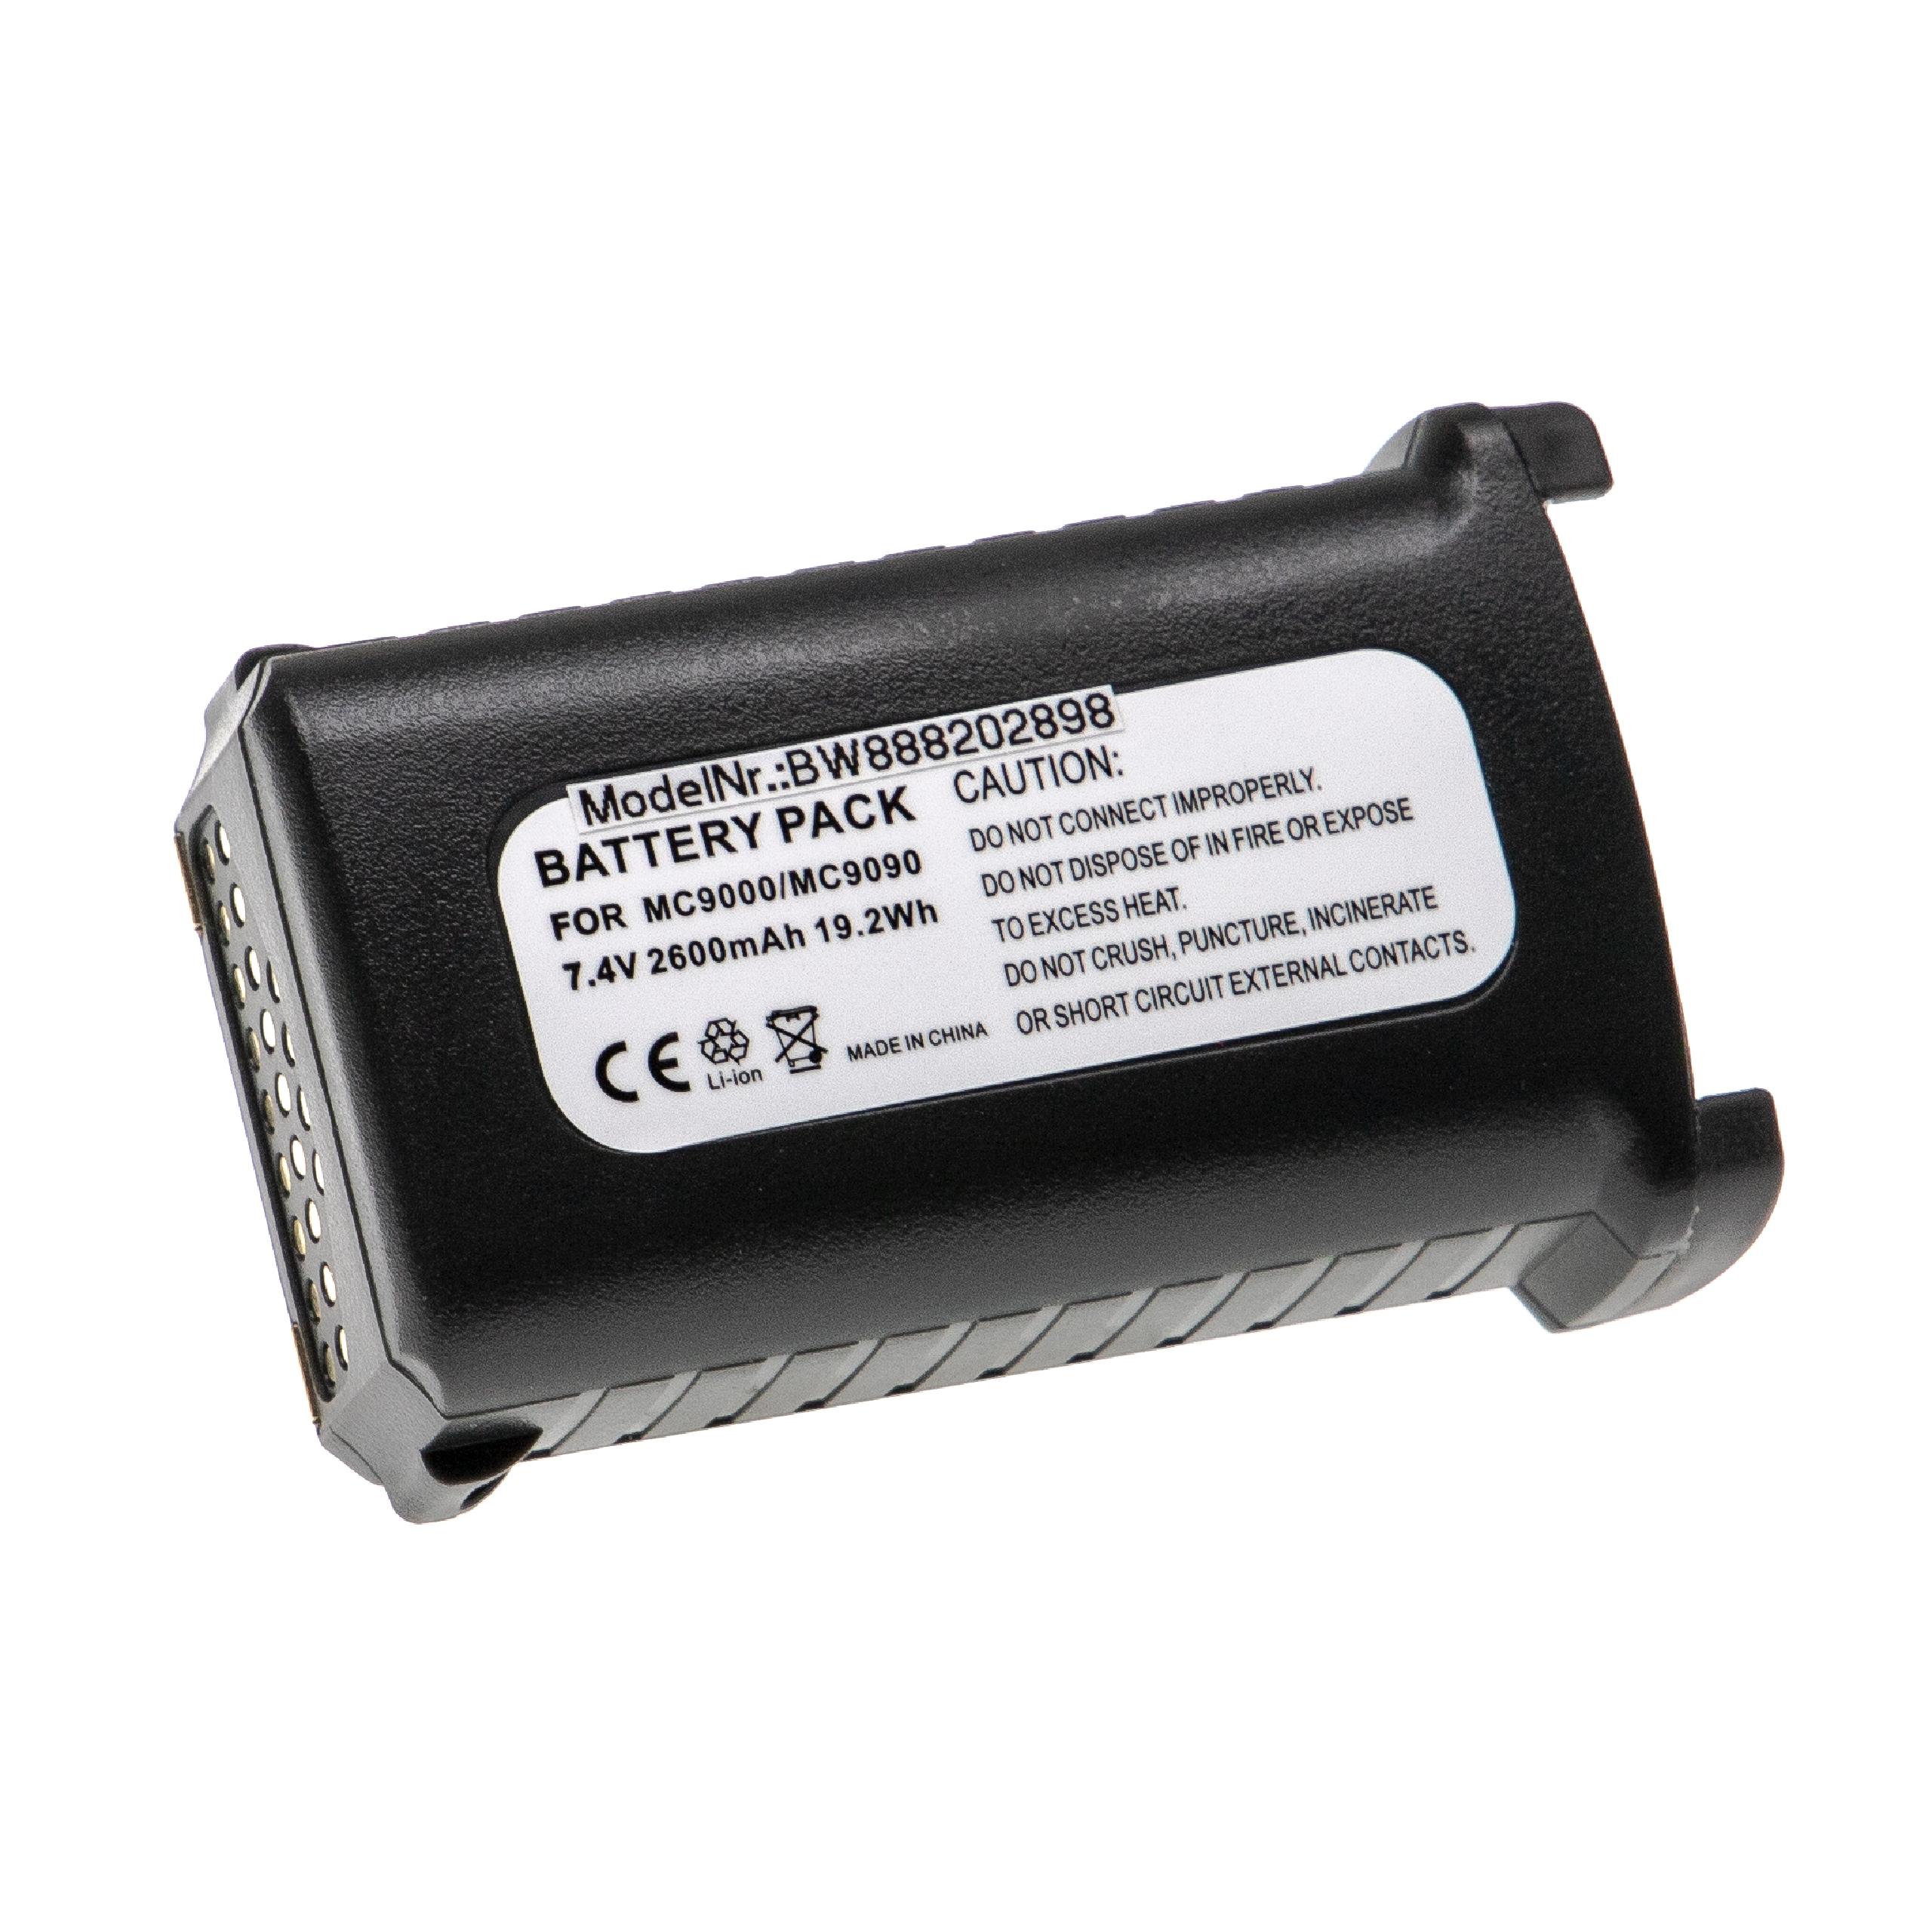 Batterie remplace Symbol 21-65587-02, 21-65587-01, 21-61261-01 pour ordinateur de poche - 2600mAh 7,4V Li-ion